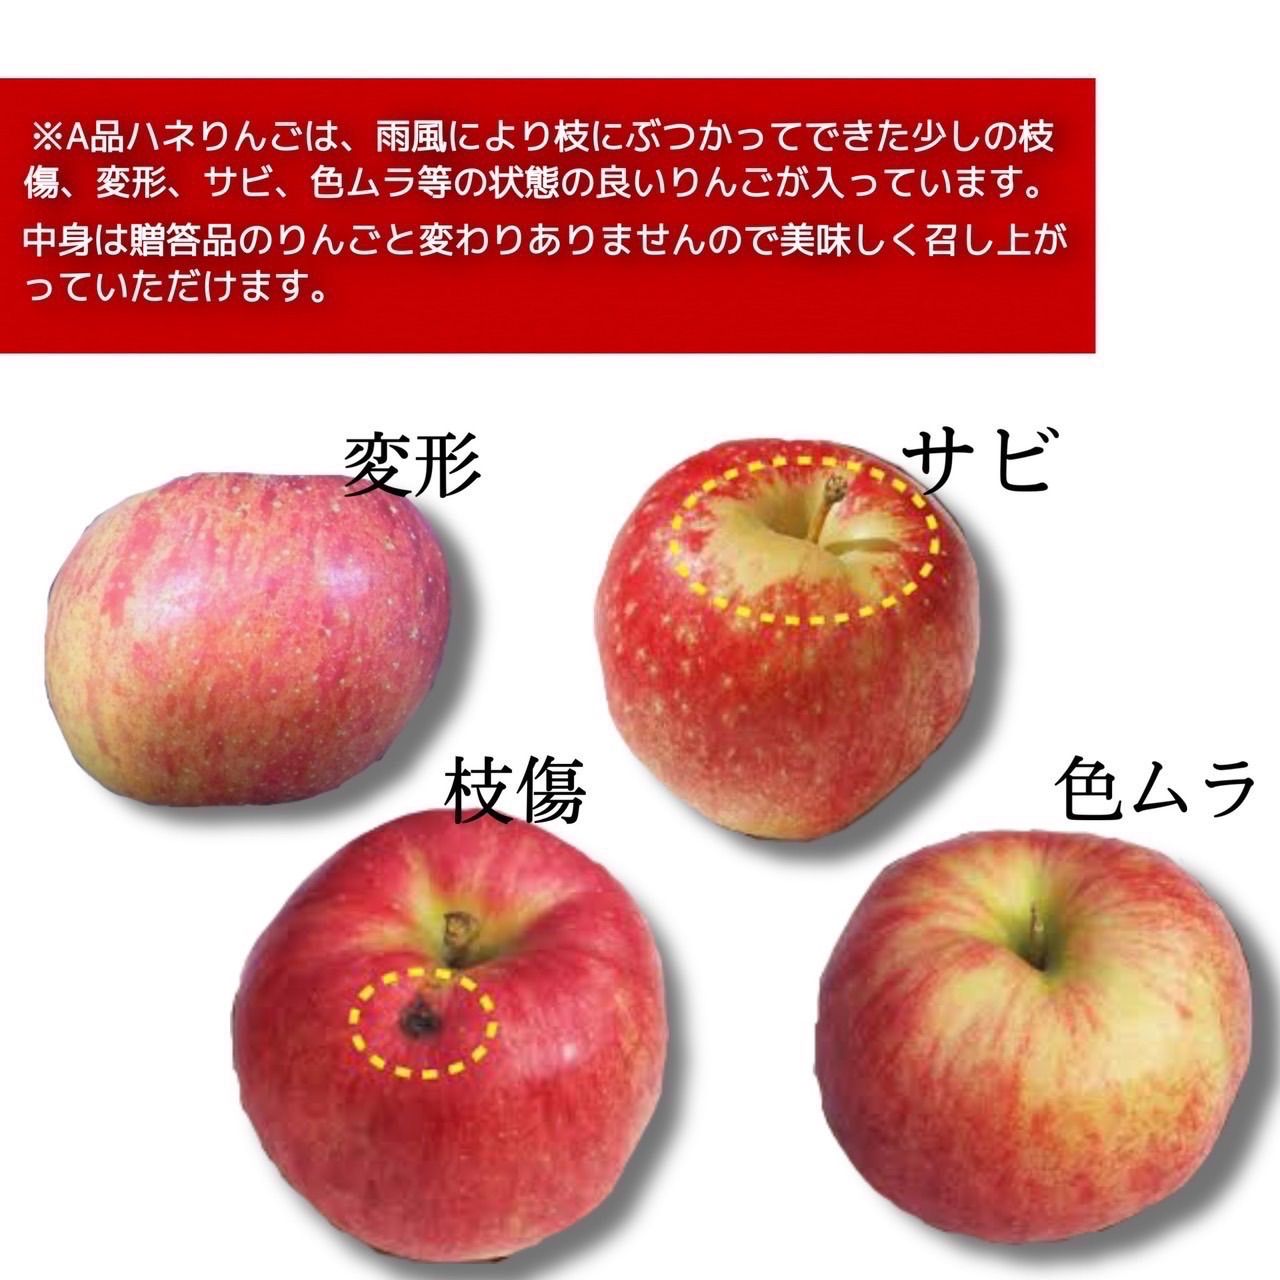 青森県産 あいかの香り りんご 家庭用 5kg 農家直送 送料無料 リンゴ